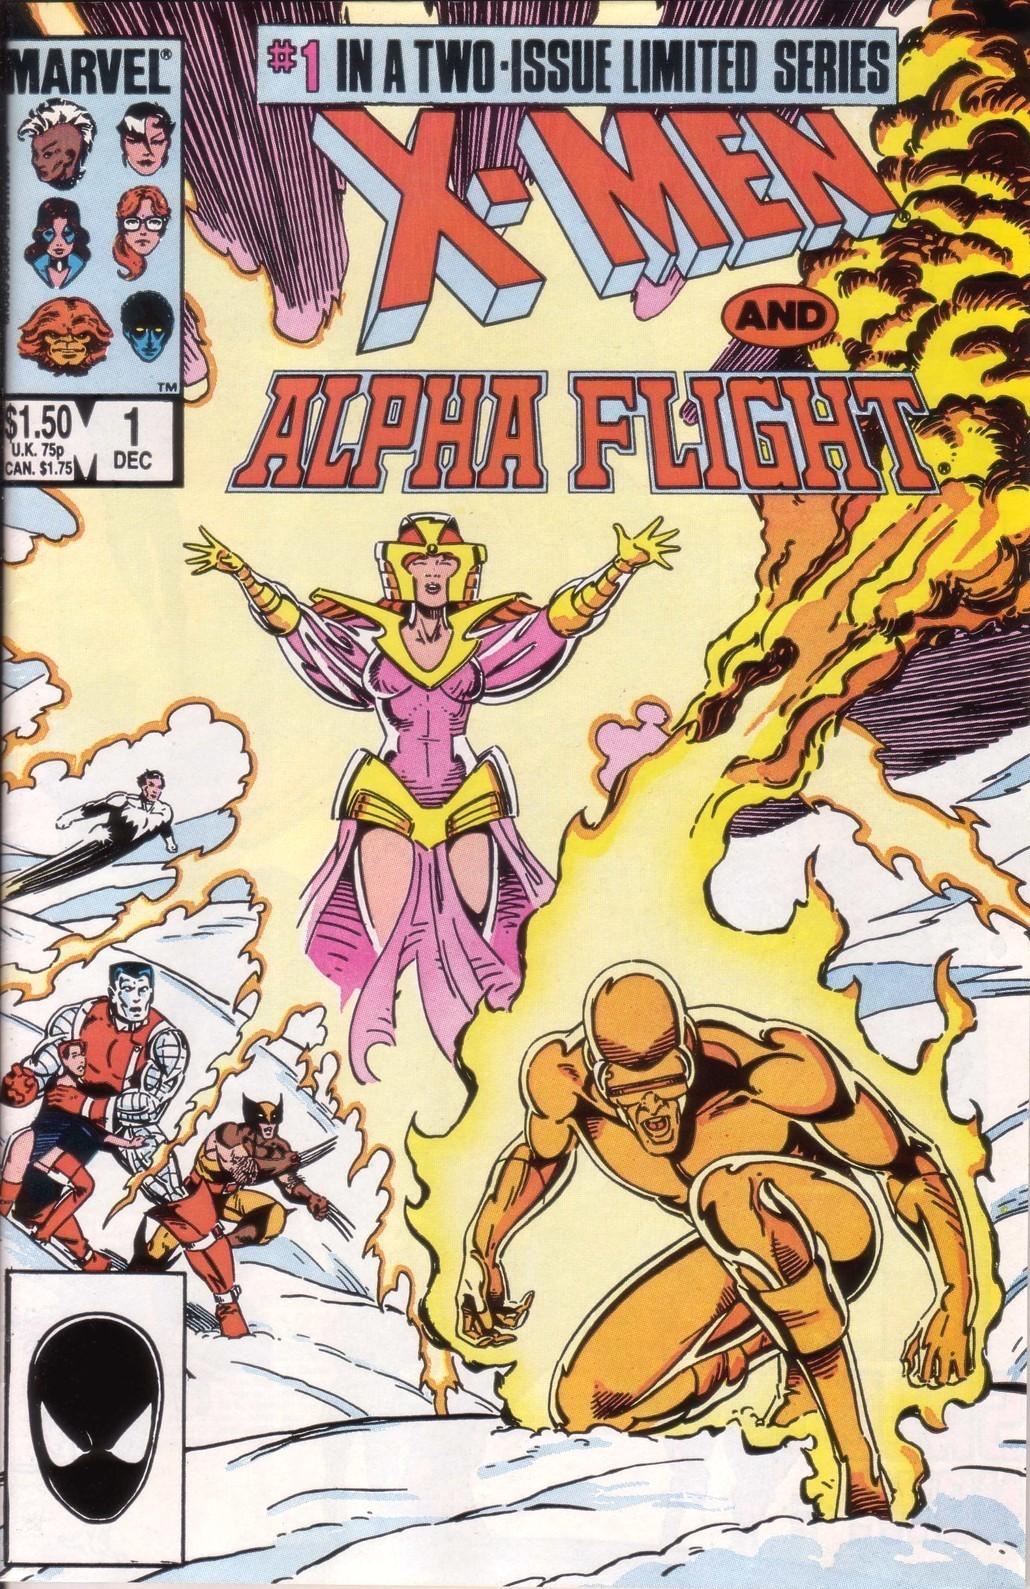 X-Men and Alpha Flight Vol. 1 #1